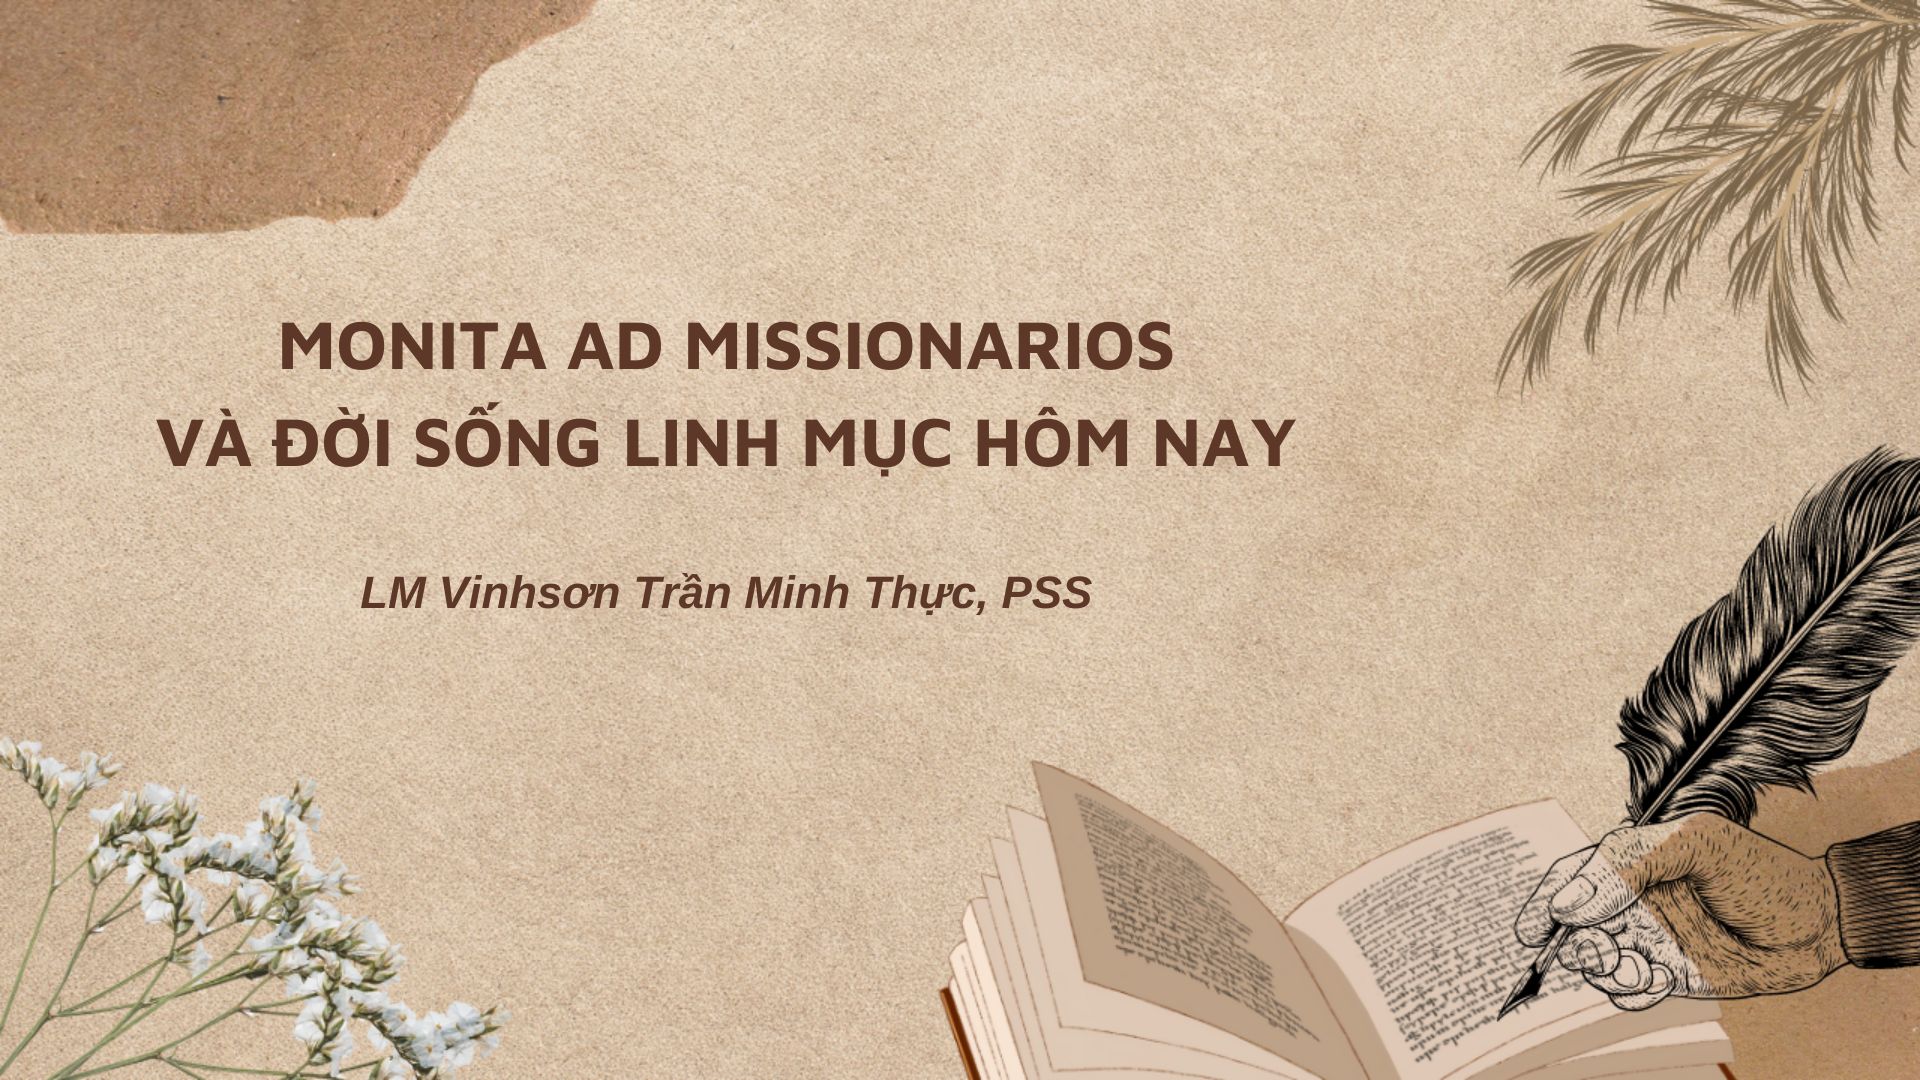 Monita ad missionarios và đời sống linh mục hôm nay